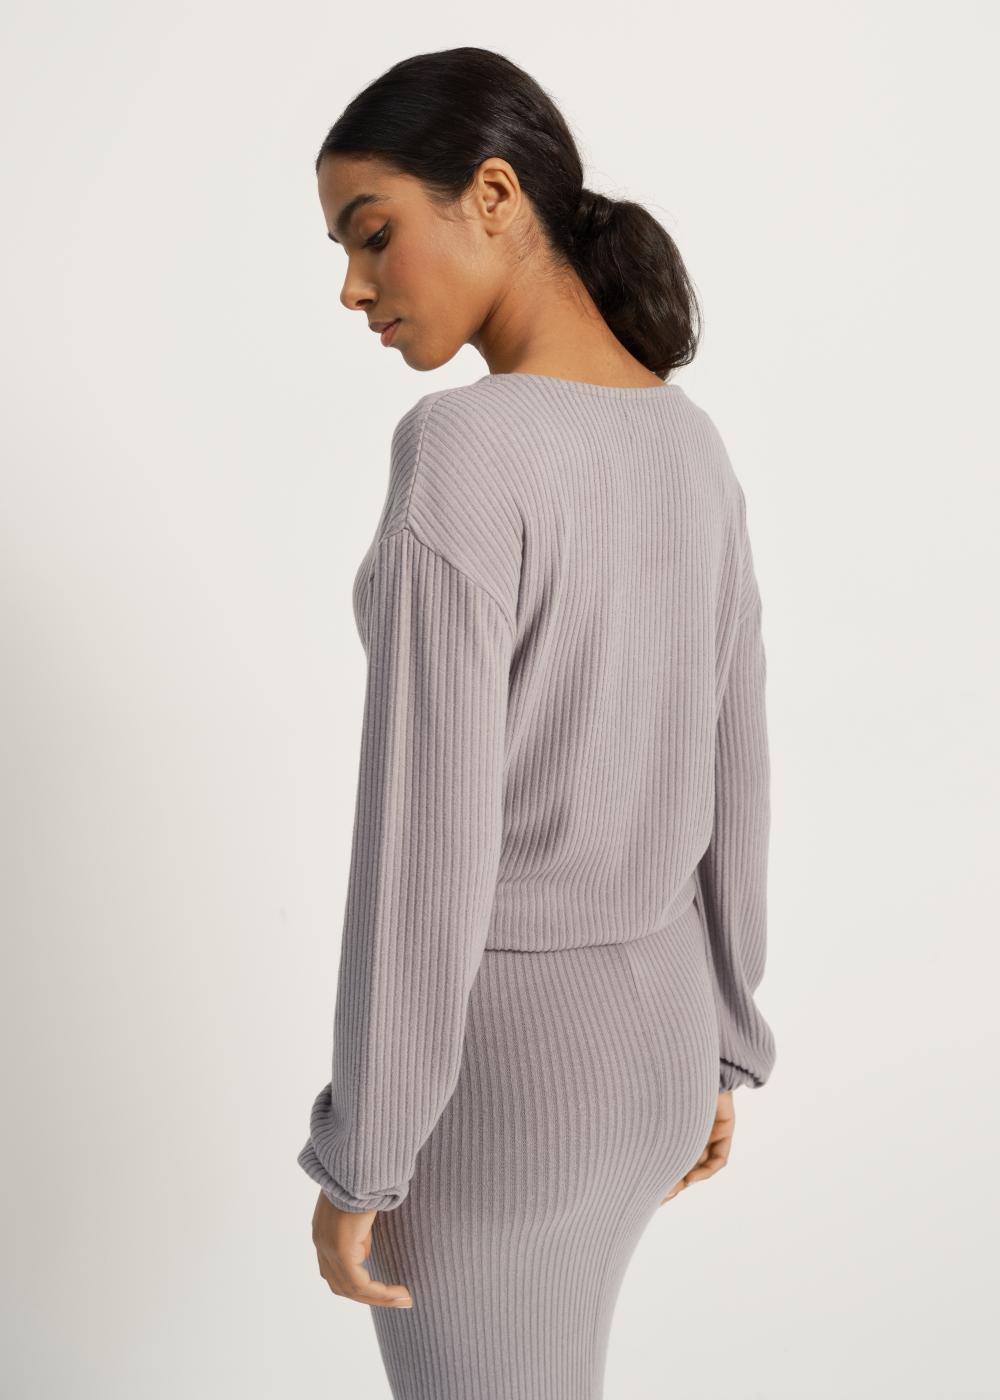 Szary prążkowany sweter damski SWEDT-0178-66(W23)